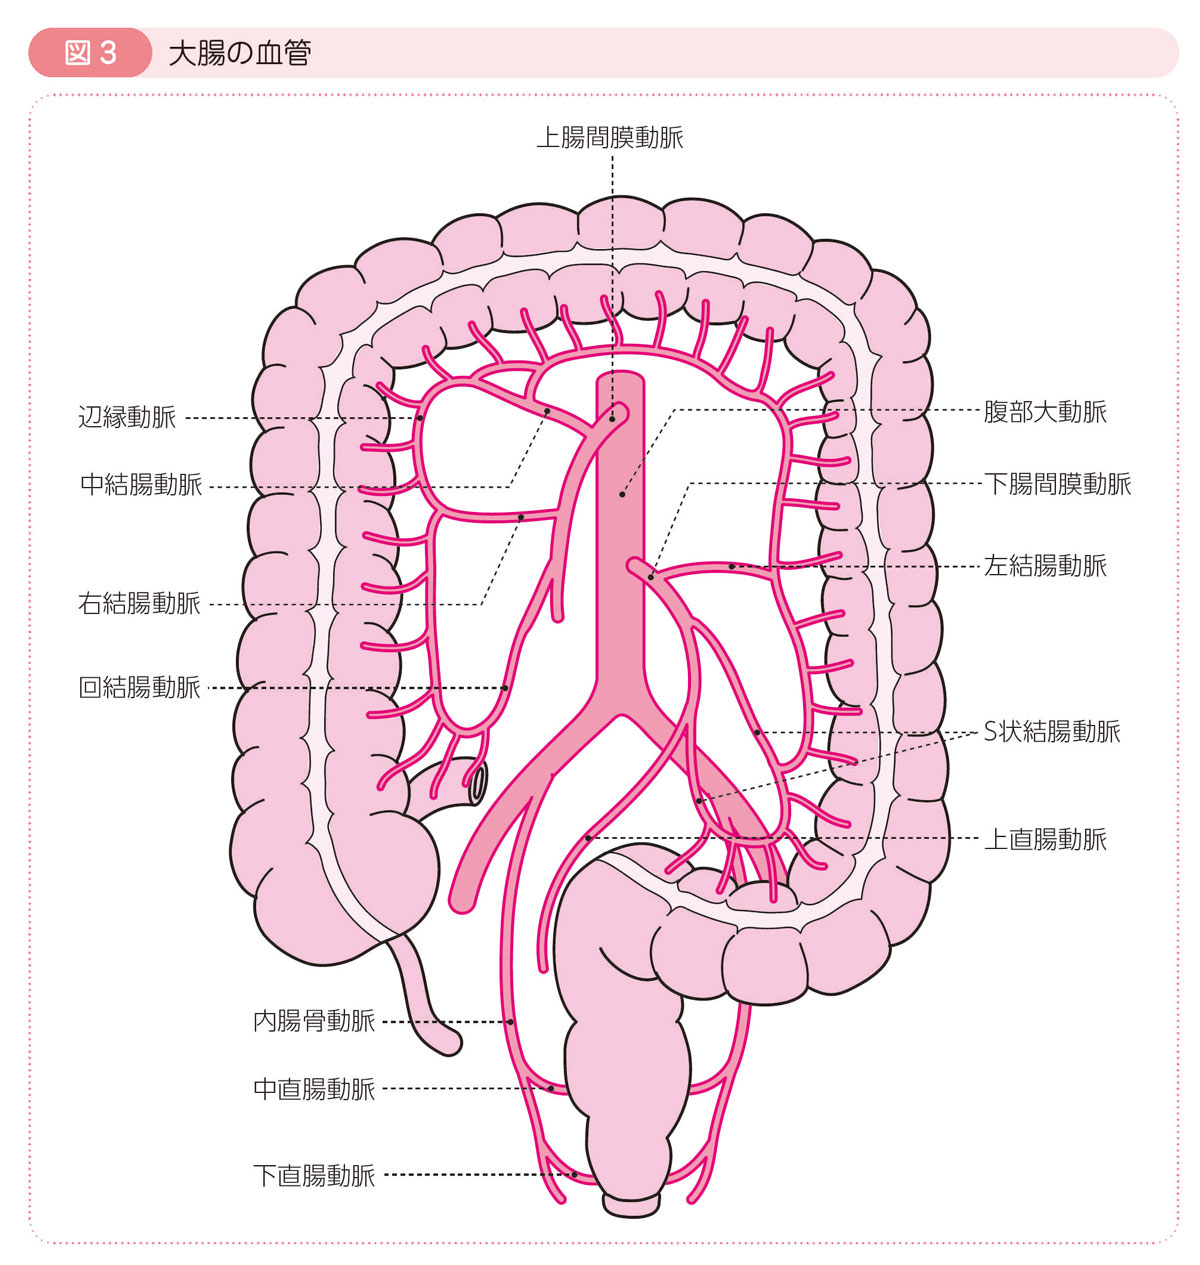 図3 大腸の血管